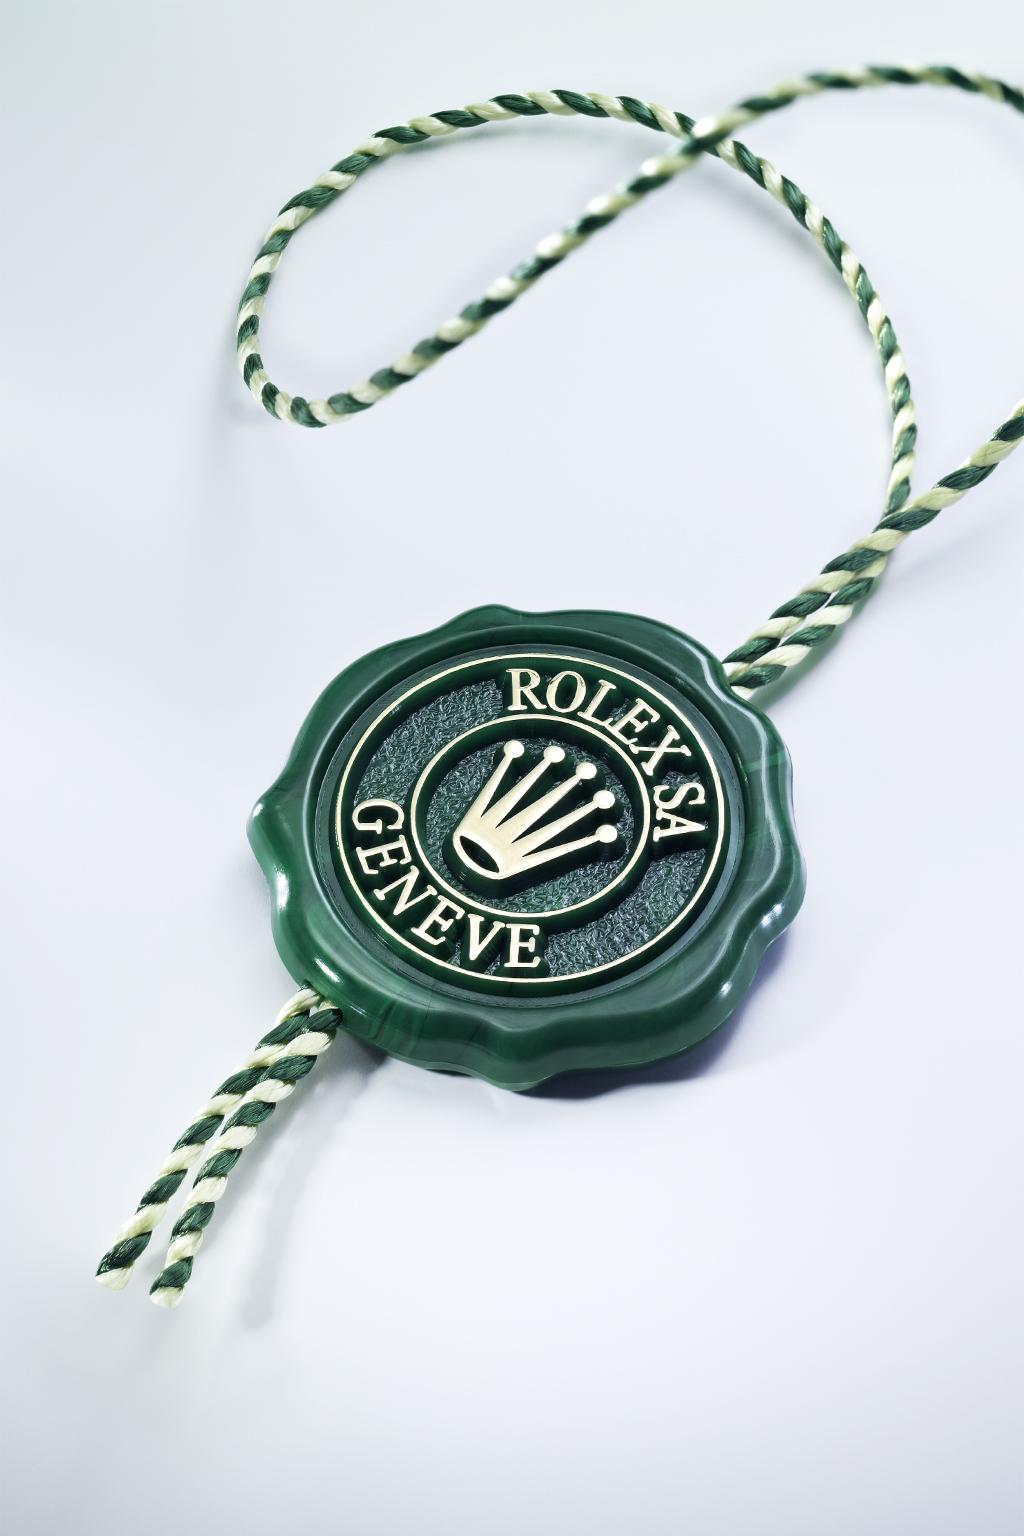 Özellikler ÜSTÜN KRONOMETRE Her bir Rolex saatine eşlik eden yeşil mühür, saatin Üstün Kronometre statüsünün sembolüdür.